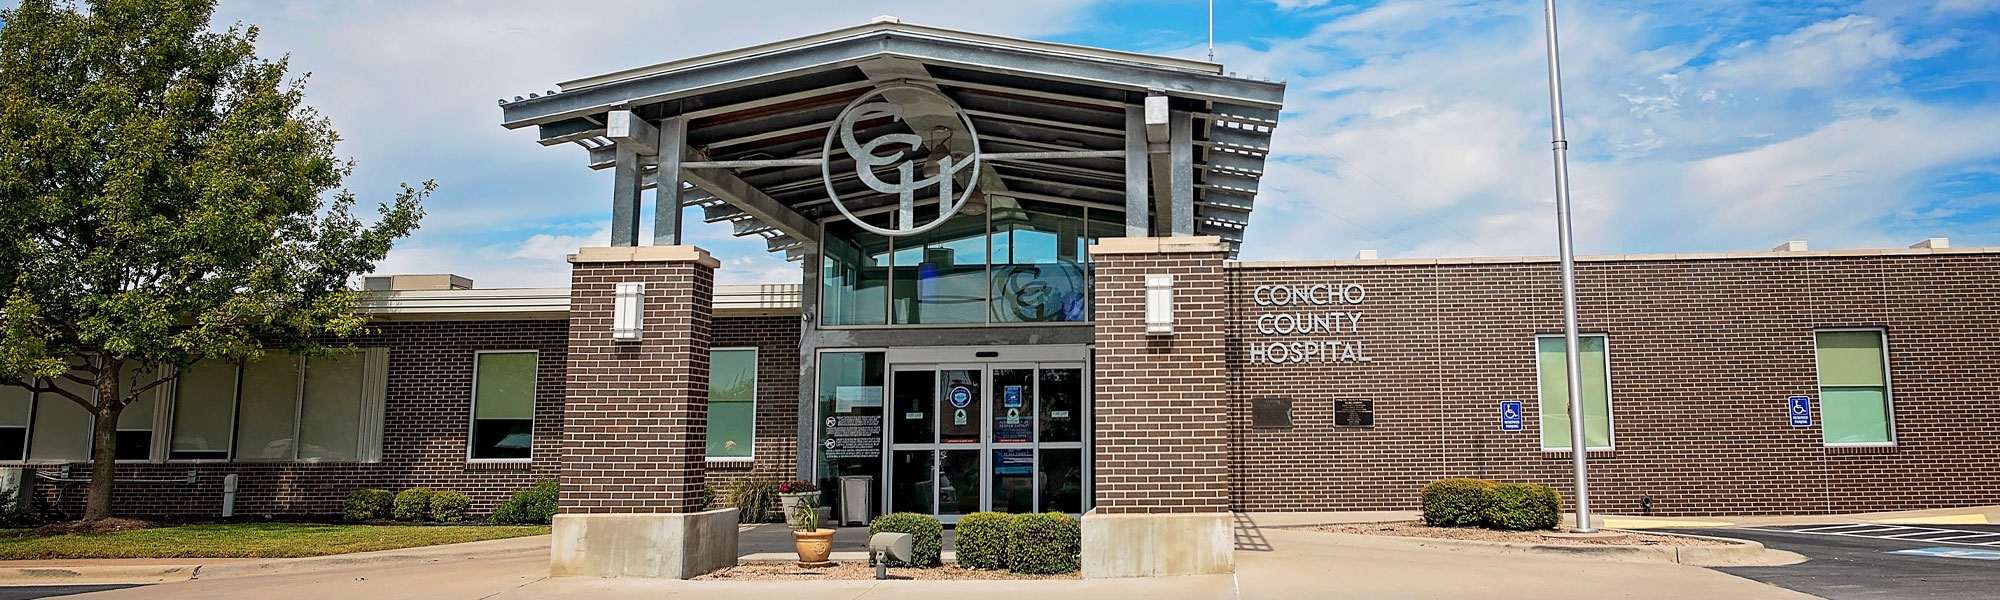 Concho County Hospital | Eden, TX